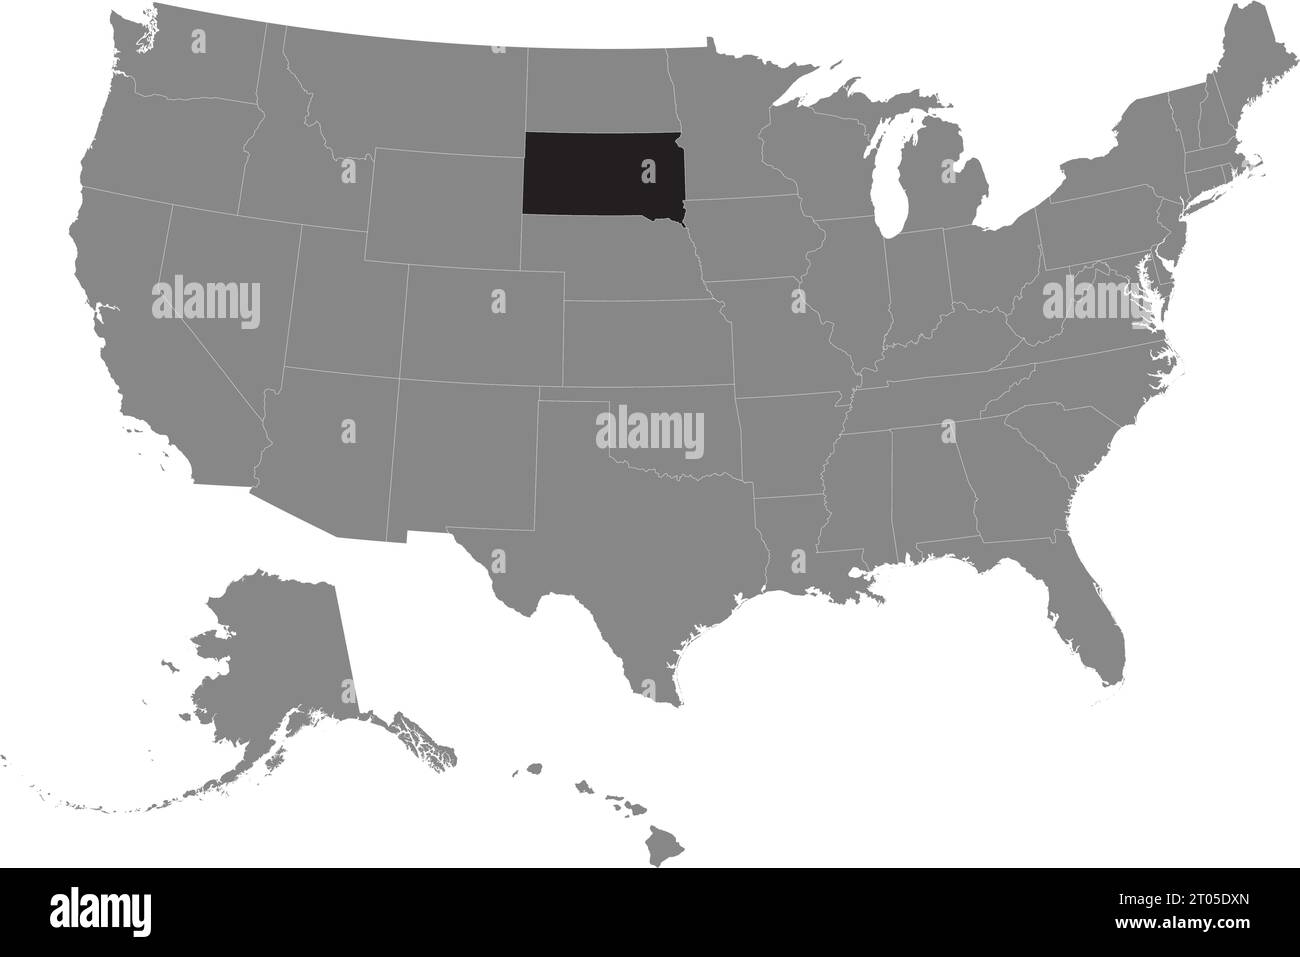 Schwarze CMYK-Bundeskarte von SOUTH DAKOTA in detaillierter grauer, leerer politischer Karte der Vereinigten Staaten von Amerika auf transparentem Hintergrund Stock Vektor